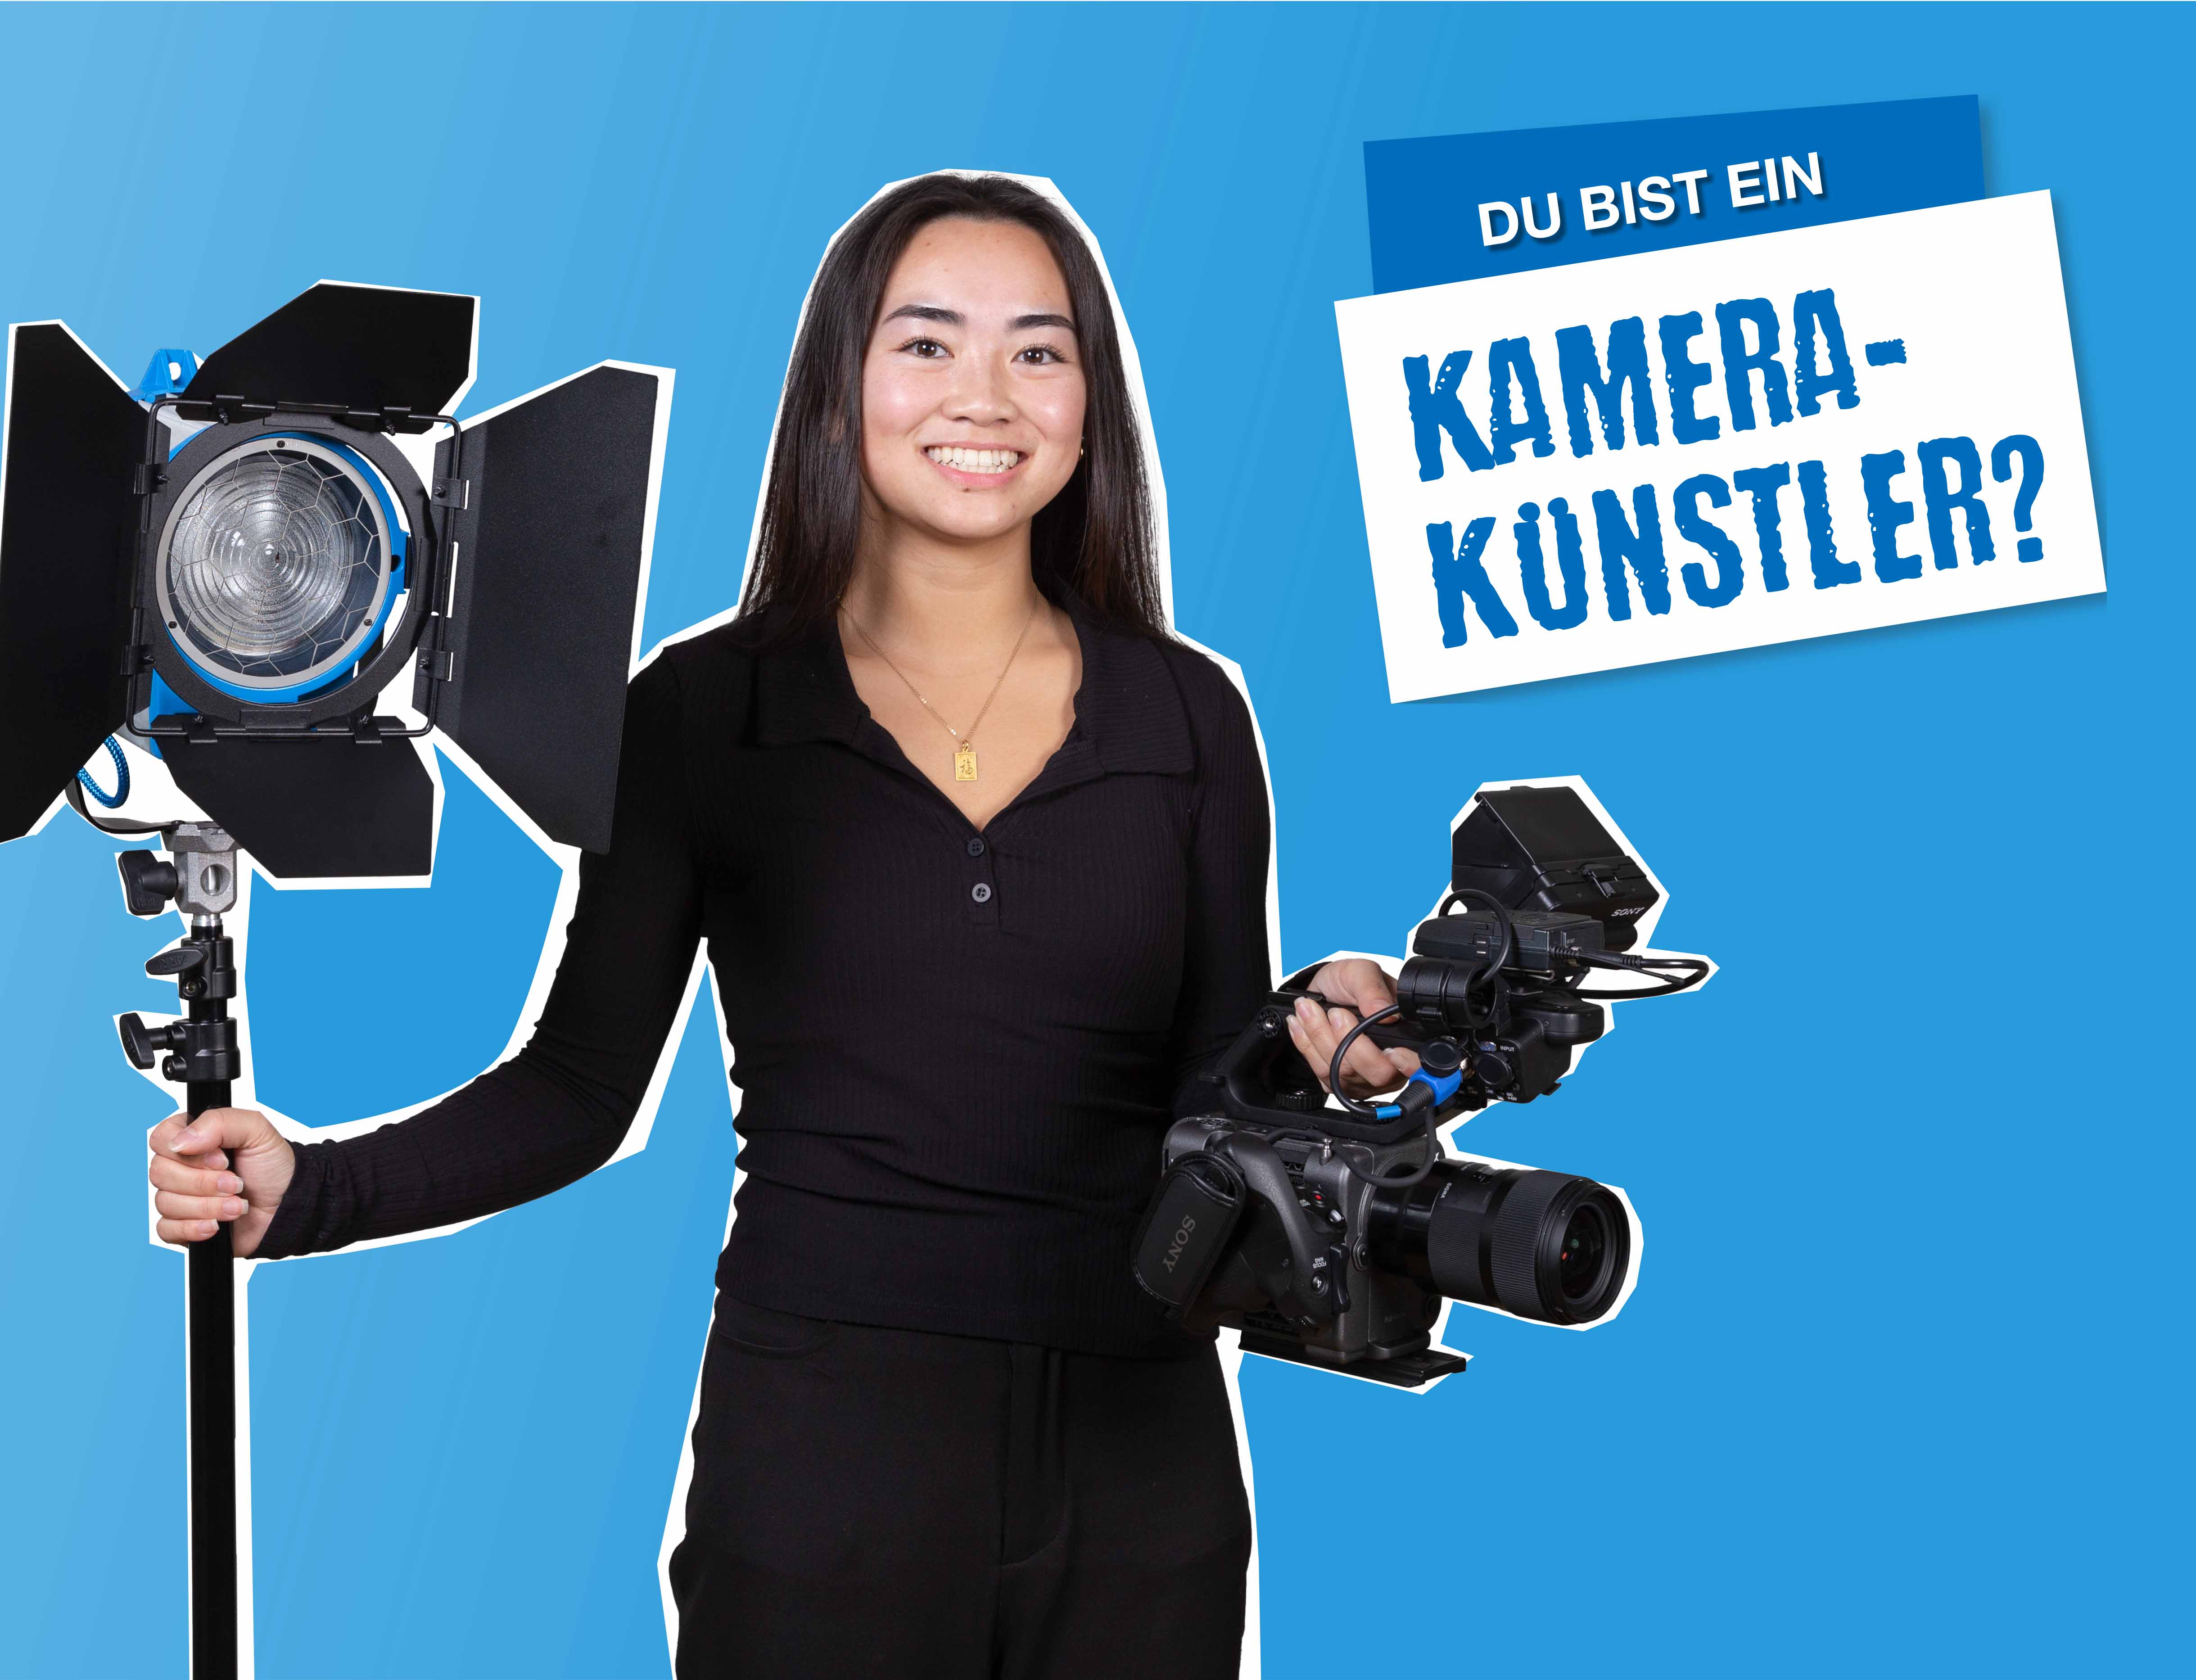 blauer Hintergrund, in der Mitte steht ein Mädchen, das eine Kamera und eine Blende festhält, daneben steht ein einer Box "Du bist ein Kamerakünster?"